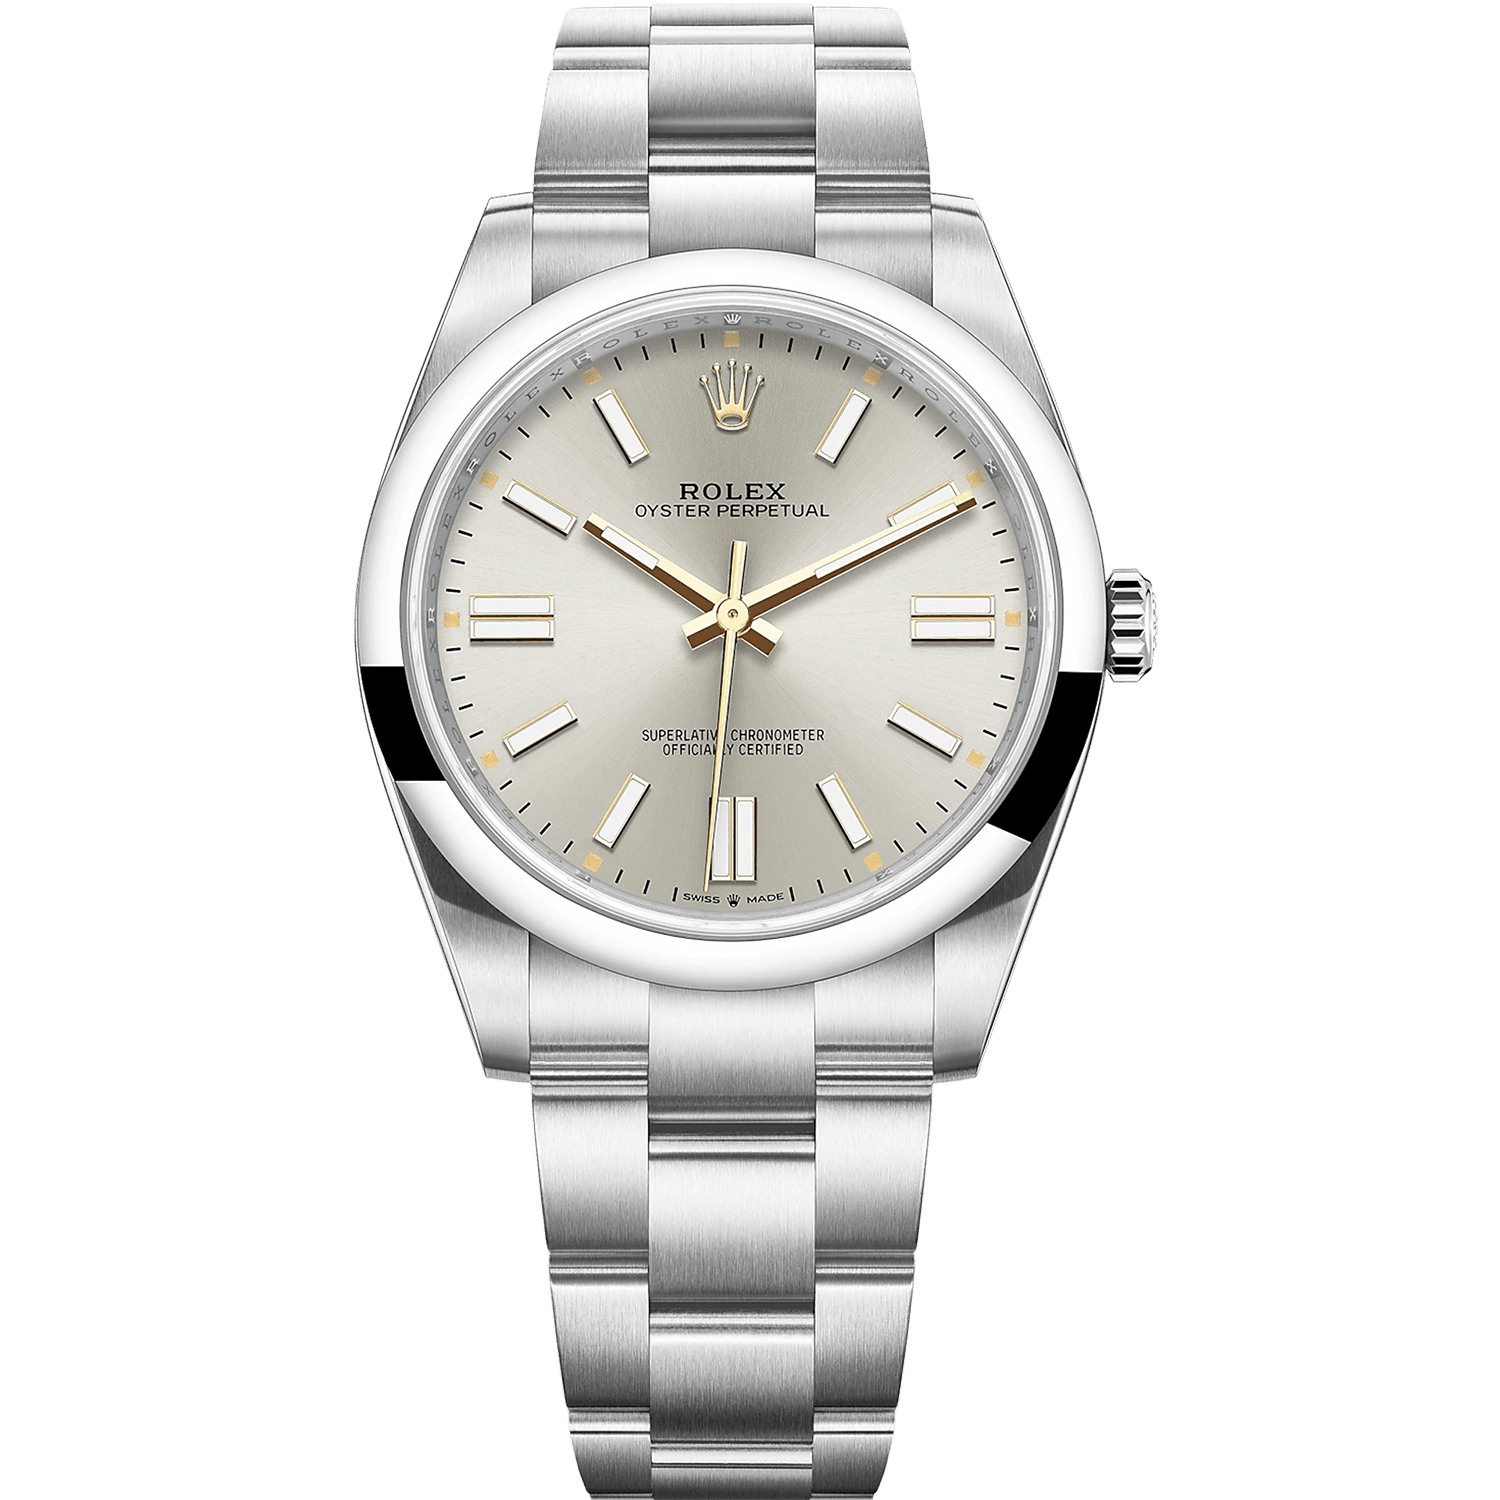 Rolex Perpetual Grau (124300-0001)